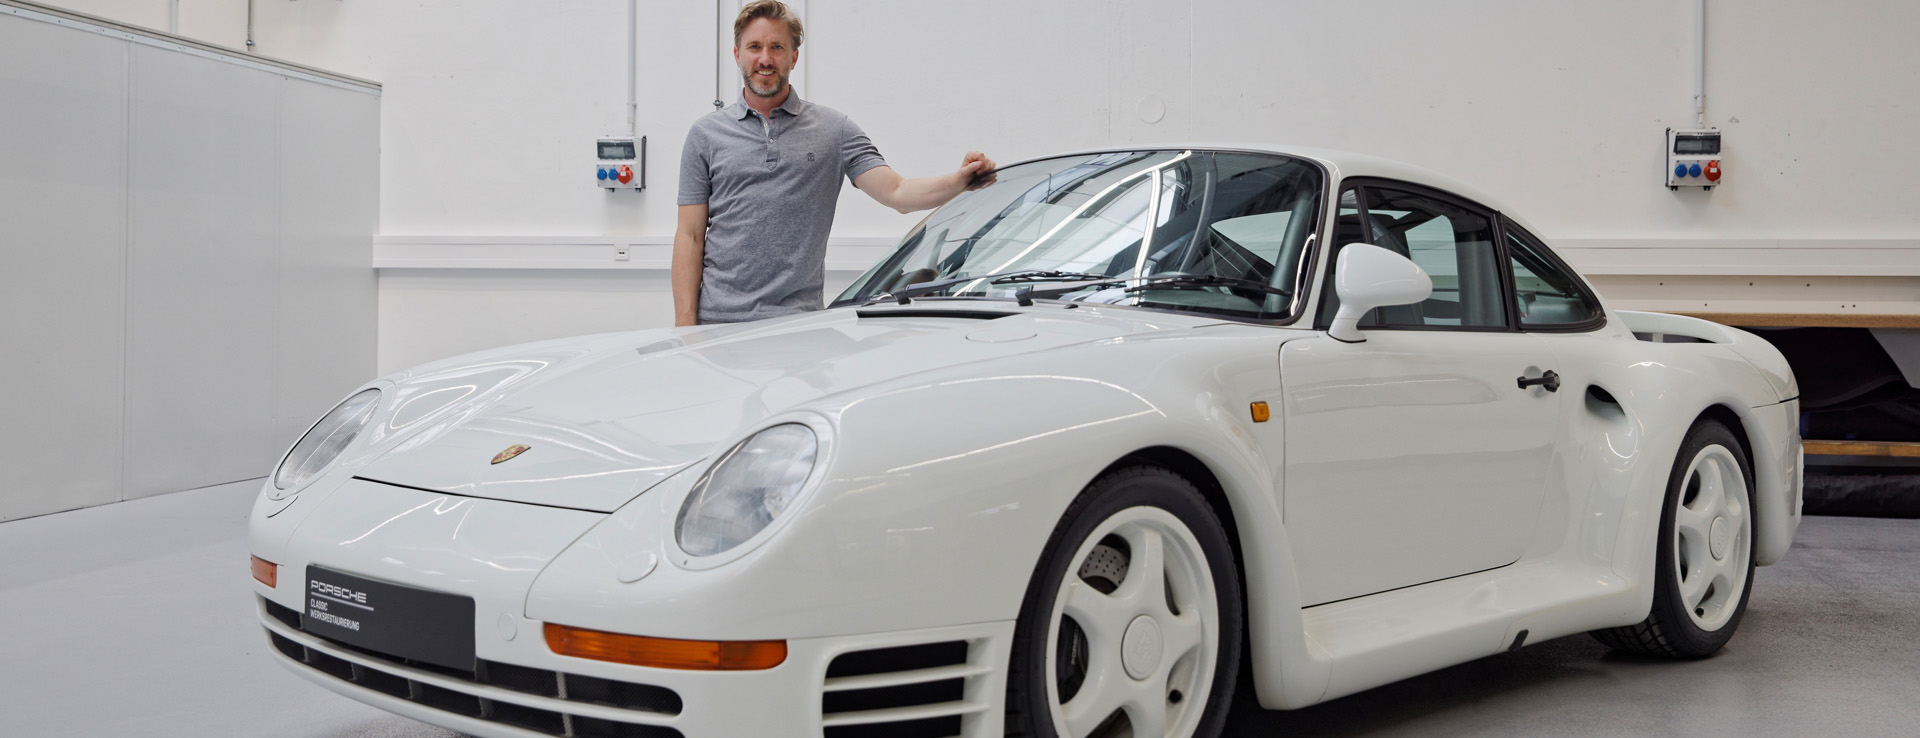 Nick Heidfeld standing behind white Porsche 959 S